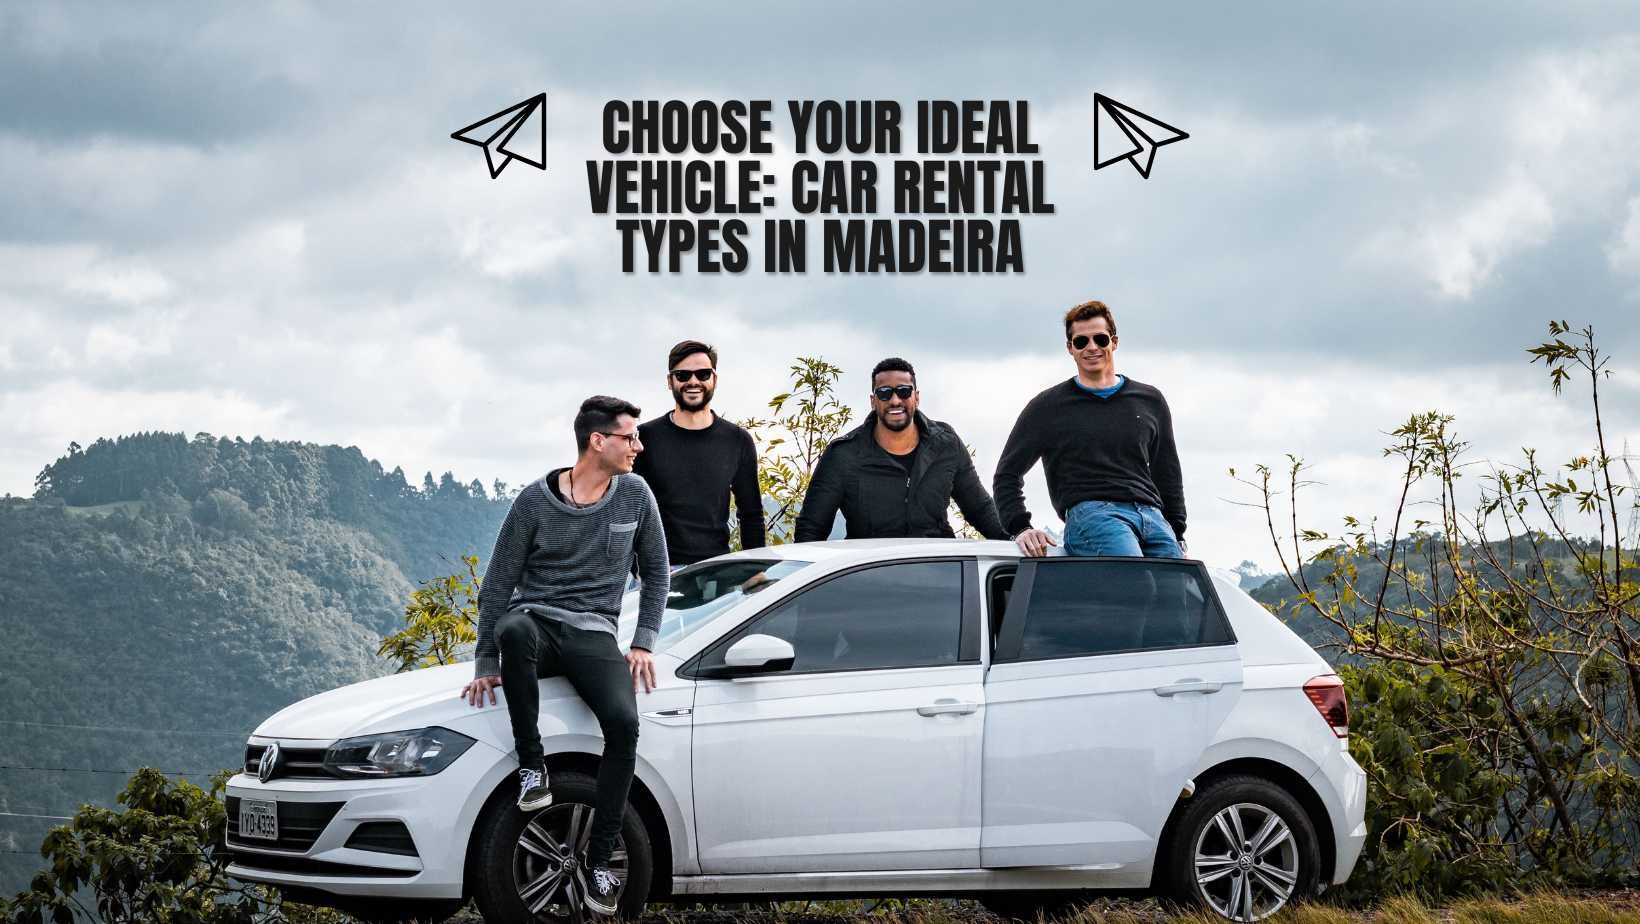 Madeira car rental vehicle types